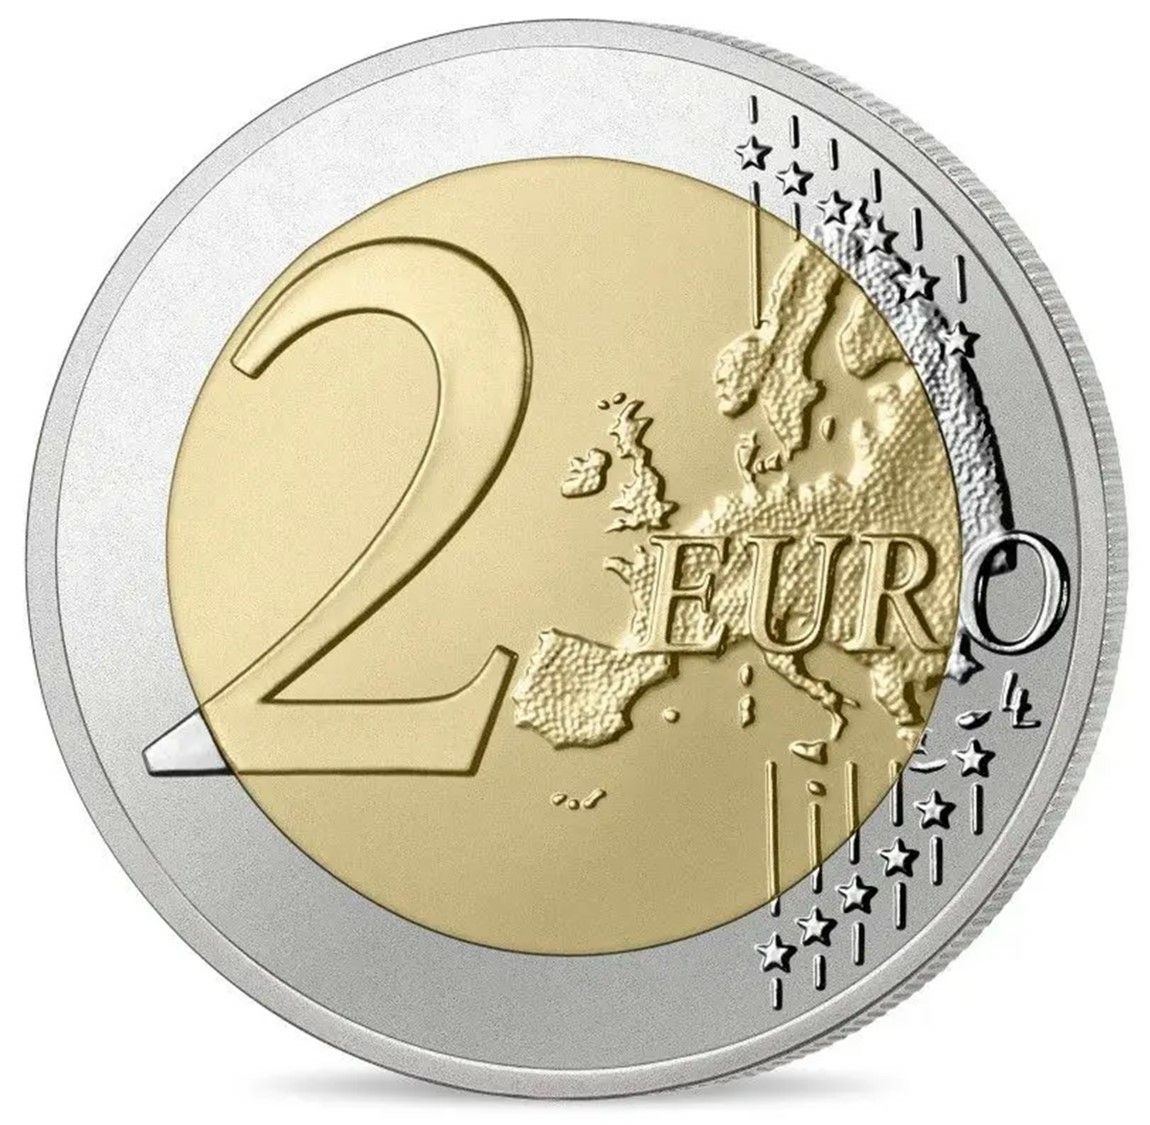 2023 フランス パリ2024 オリンピック開催記念 ブリスターパック入り 2ユーロ 硬貨の5色セット